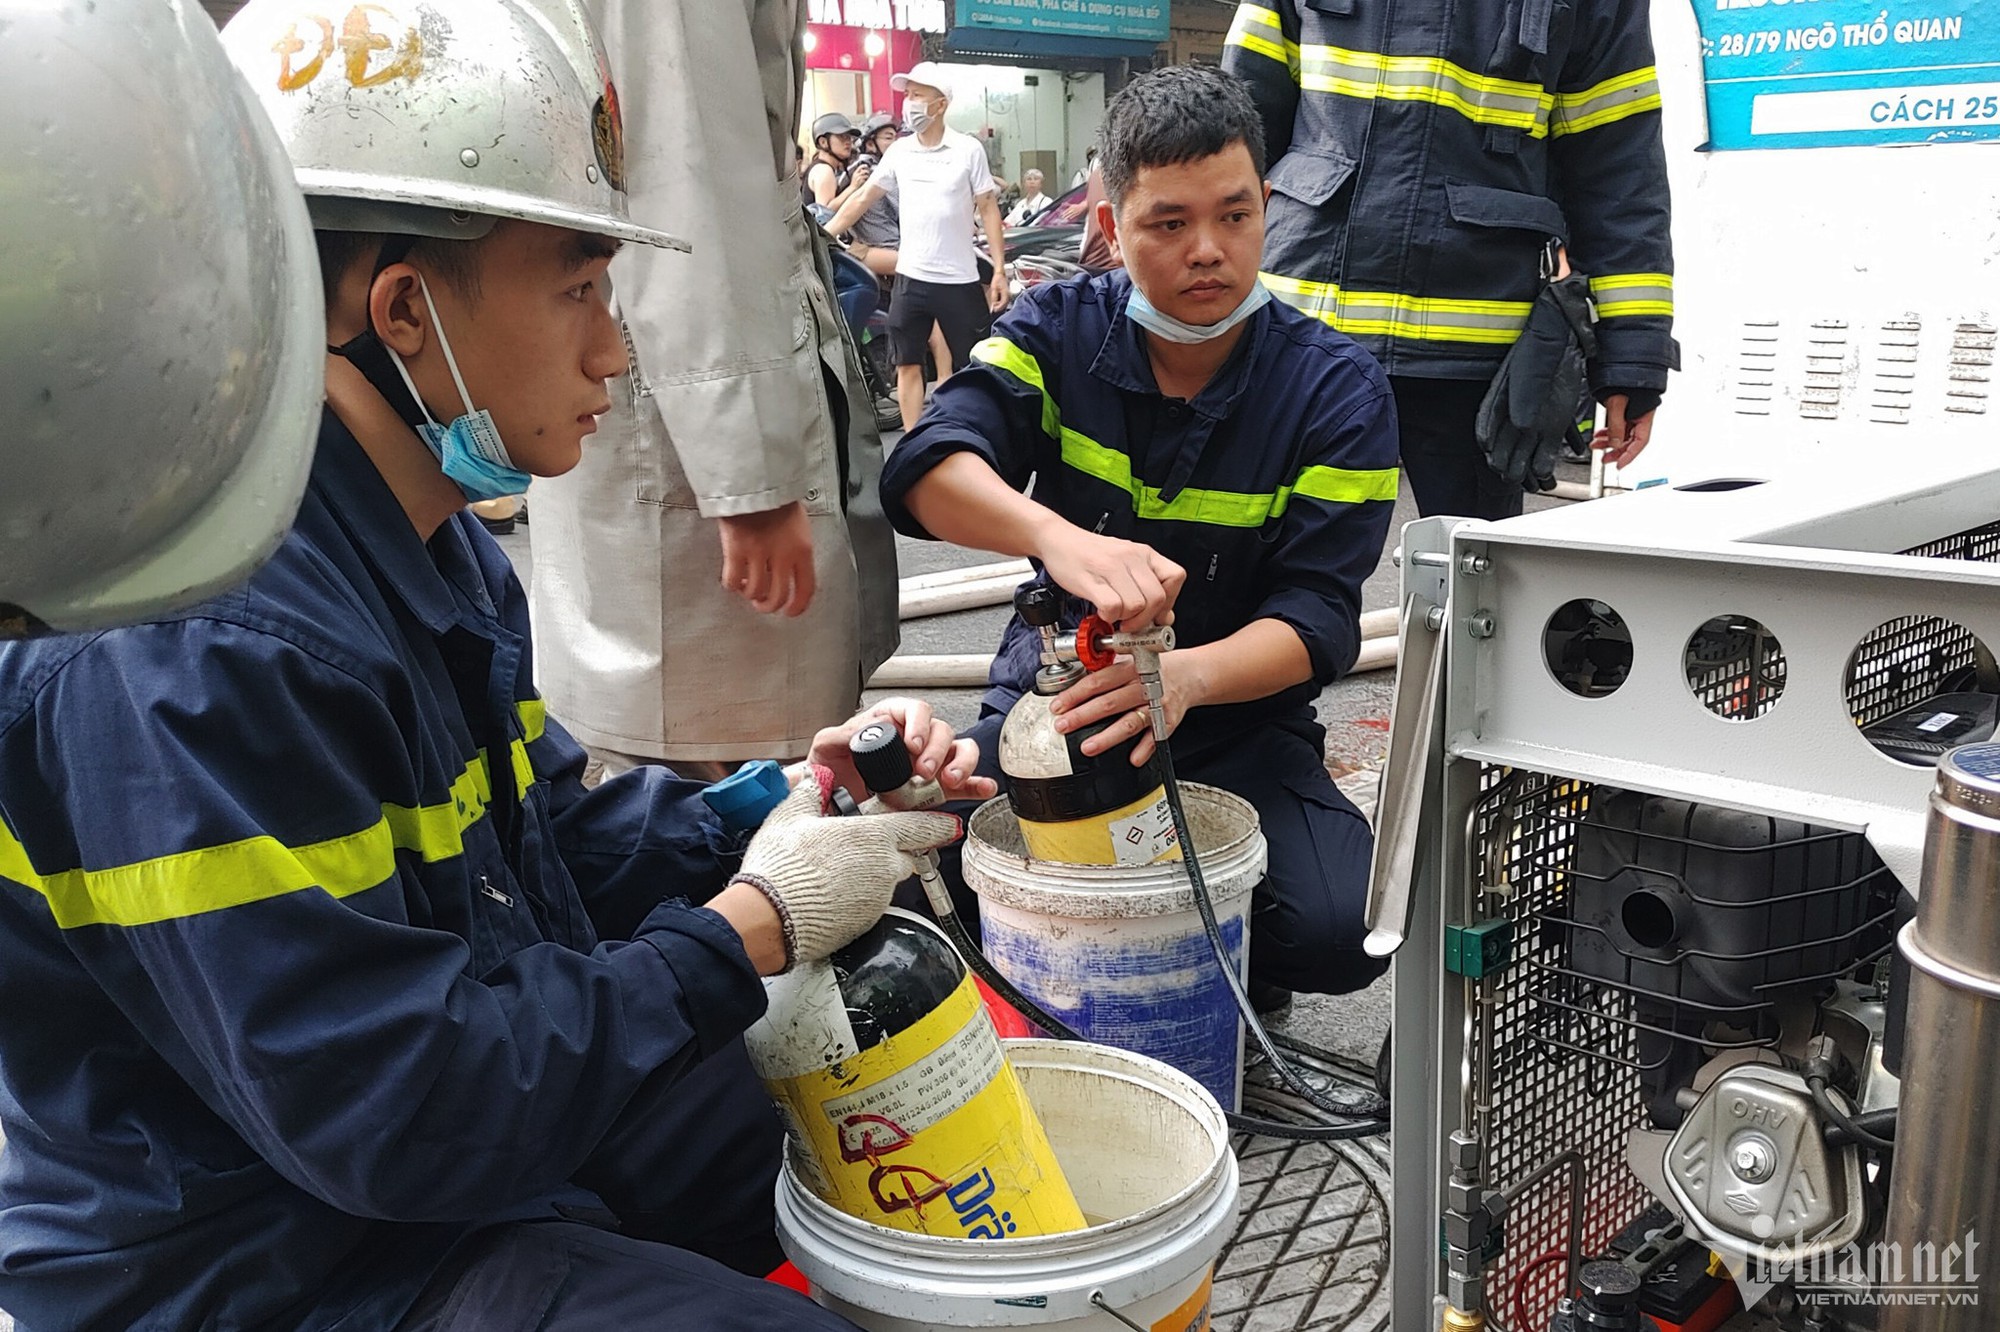 Cháy nhà 6 tầng ở Hà Nội: Cảnh sát PCCC kiệt sức sau 5 giờ lăn xả dập lửa - Ảnh 6.